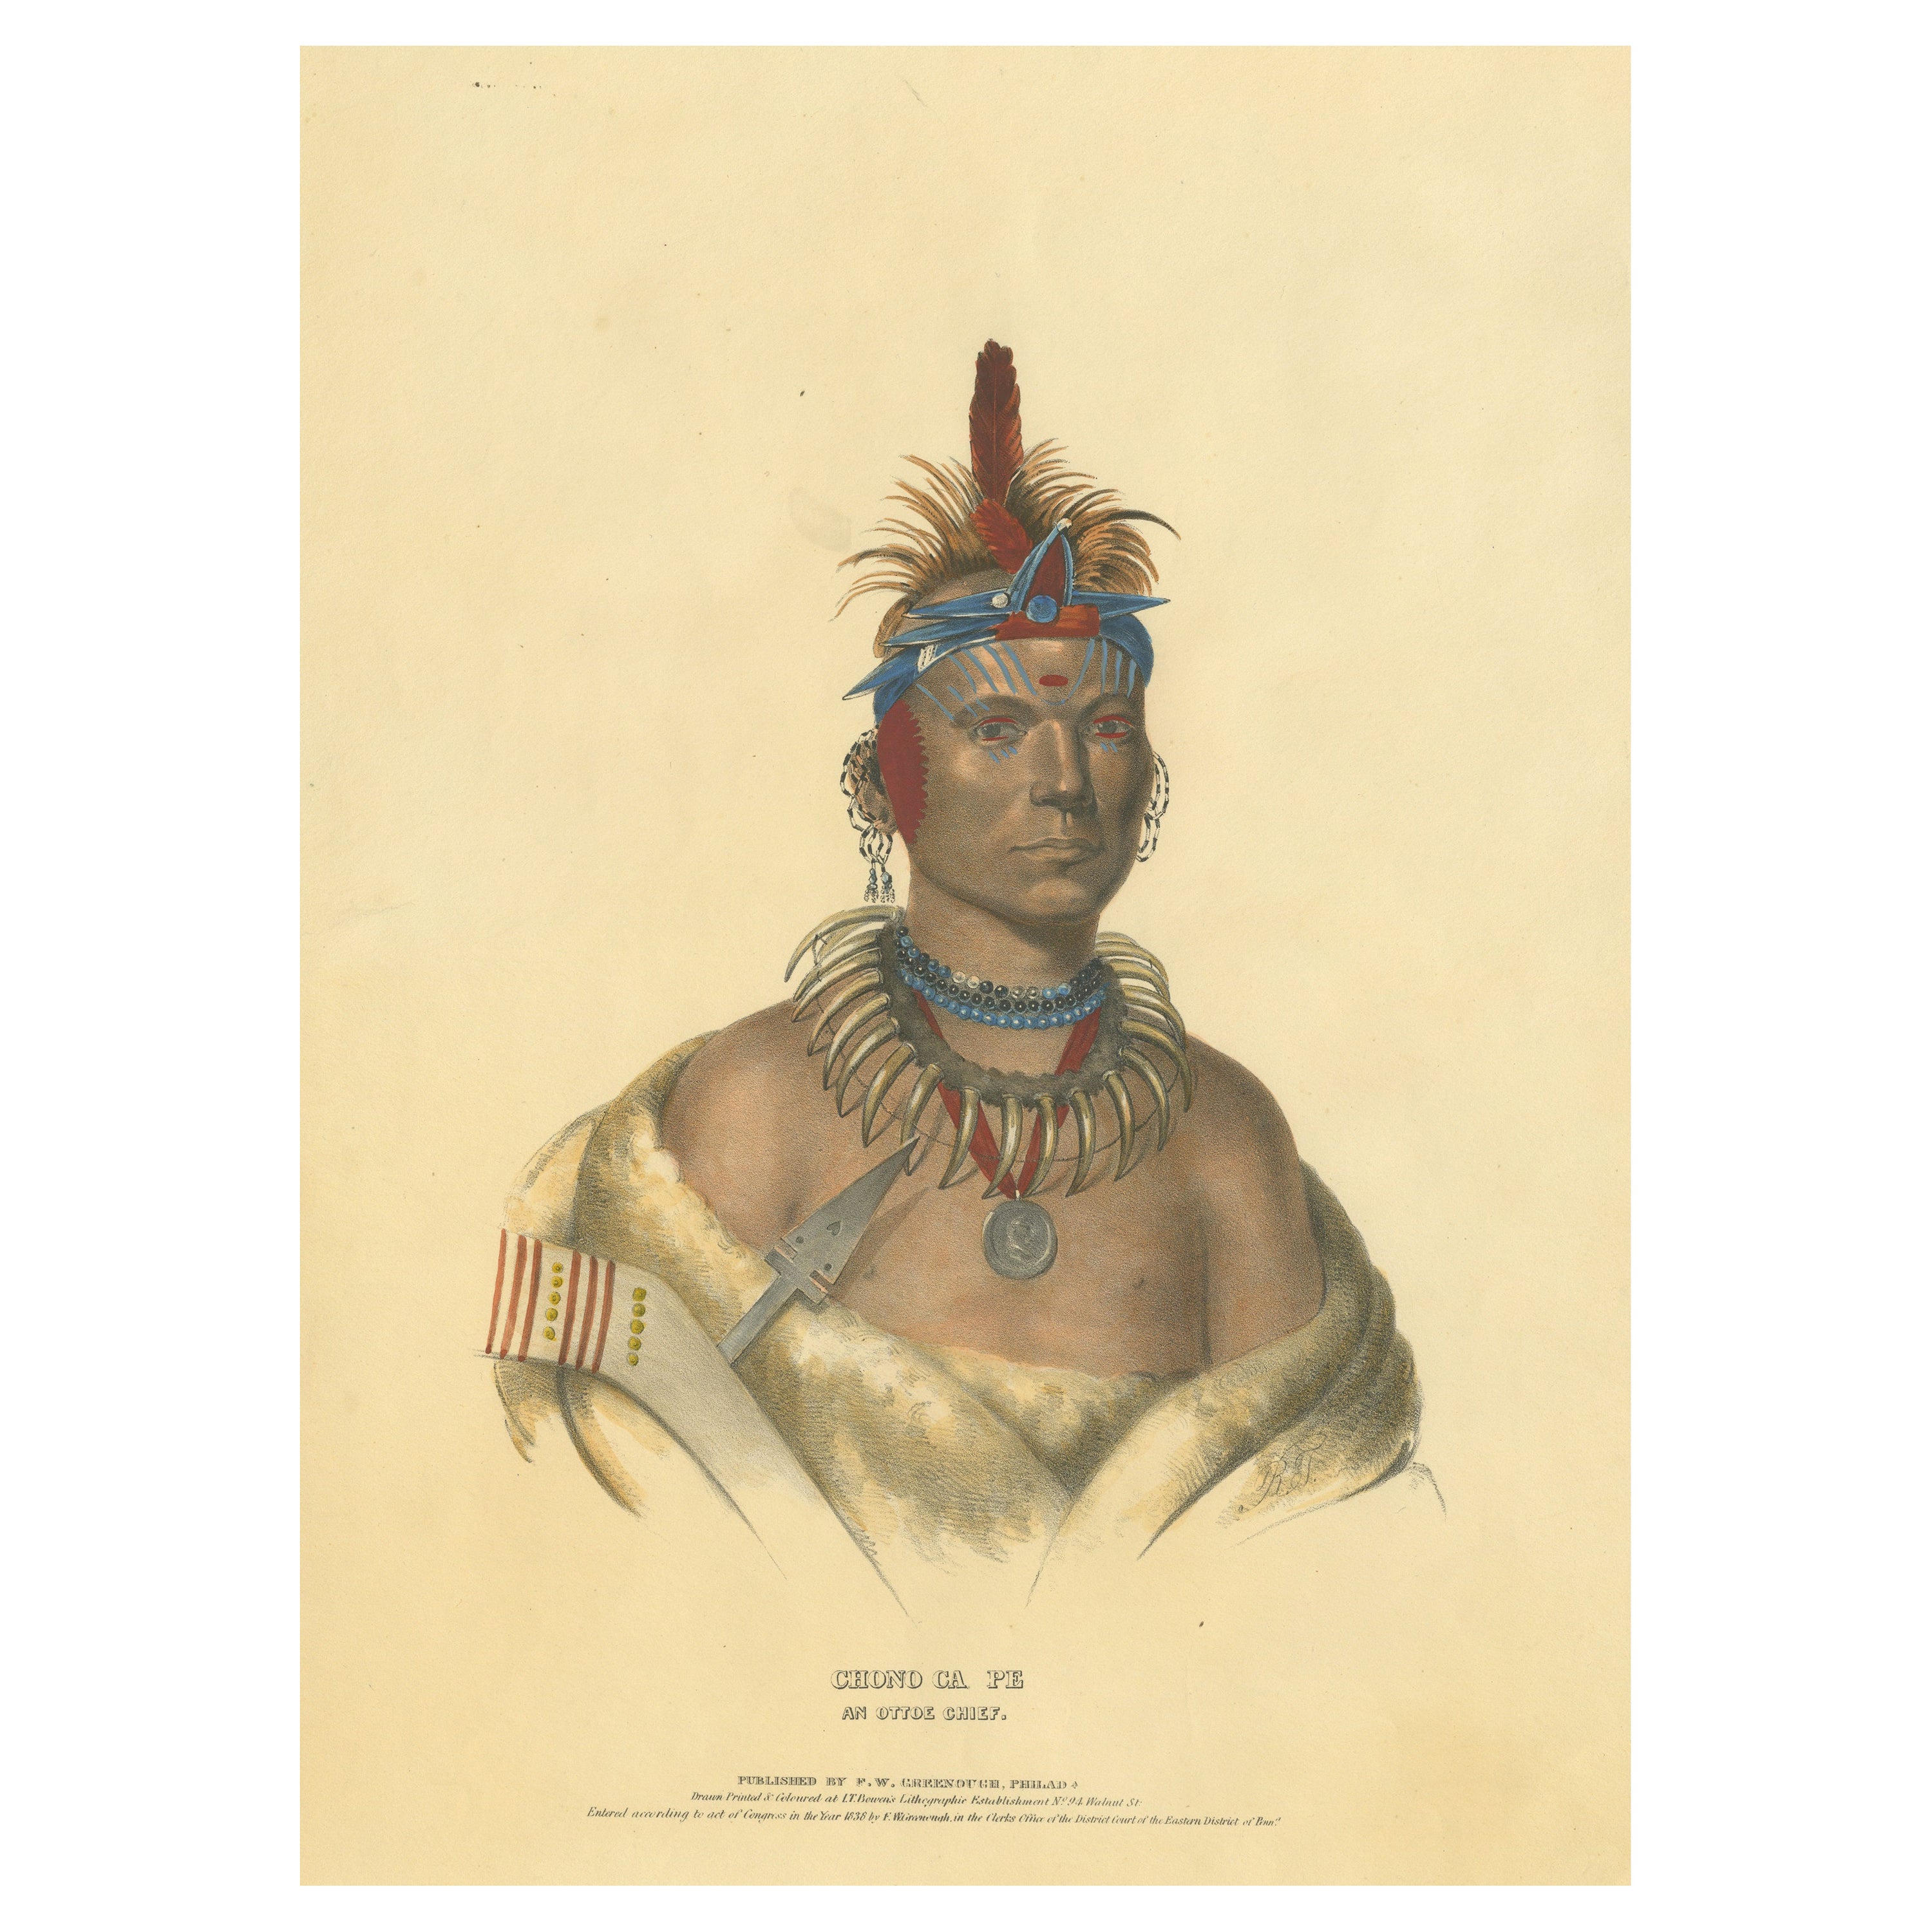 Grande gravure ancienne de Chono Ca Pe, un chef Otoe, vers 1838